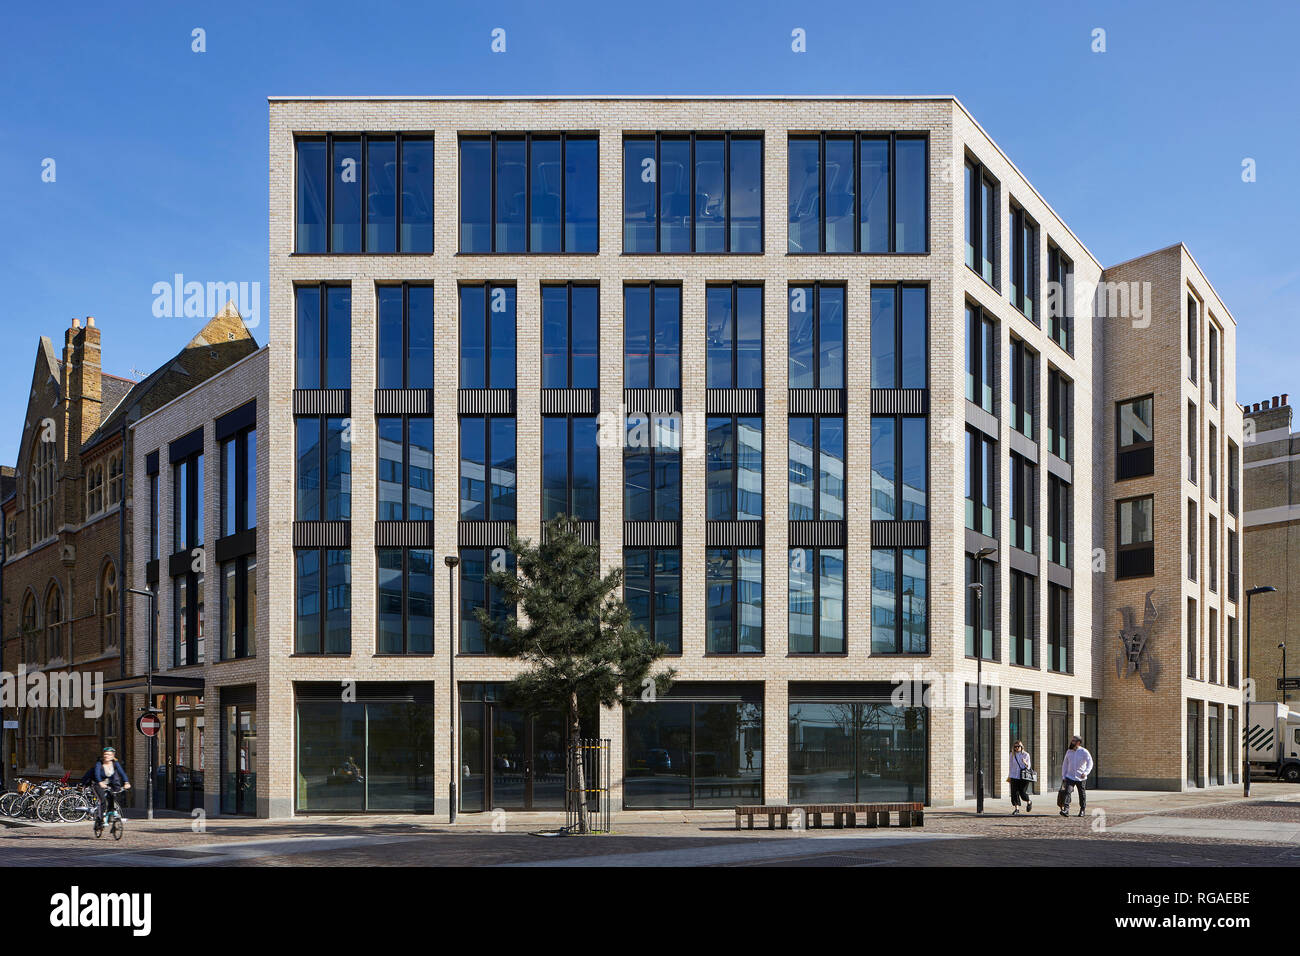 Frontansicht. Paul Street, London, Vereinigtes Königreich. Architekt: Steif+Trevillion Architekten, 2018. Stockfoto